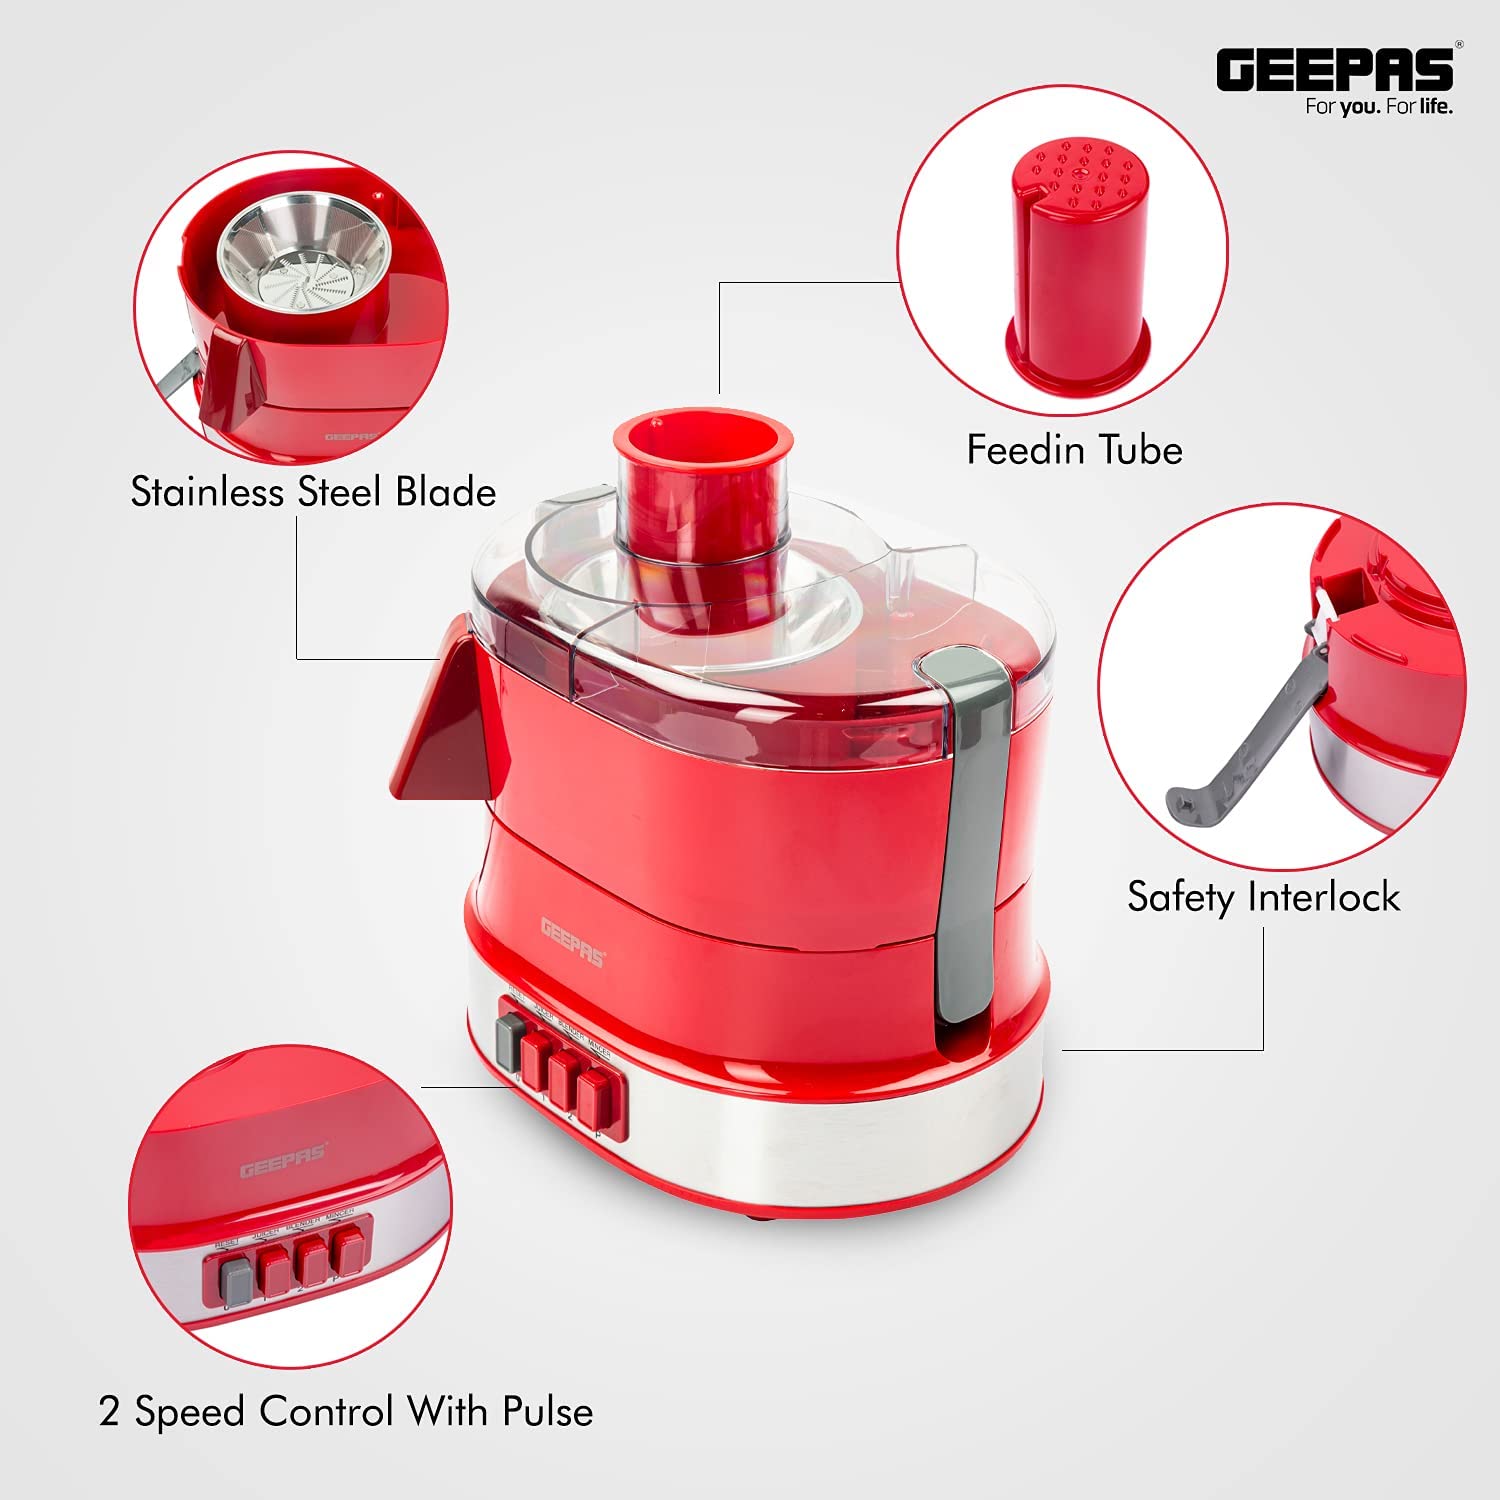 Geepas 4 In 1 Food Processor Multi Color 1.5 Liter Capacity